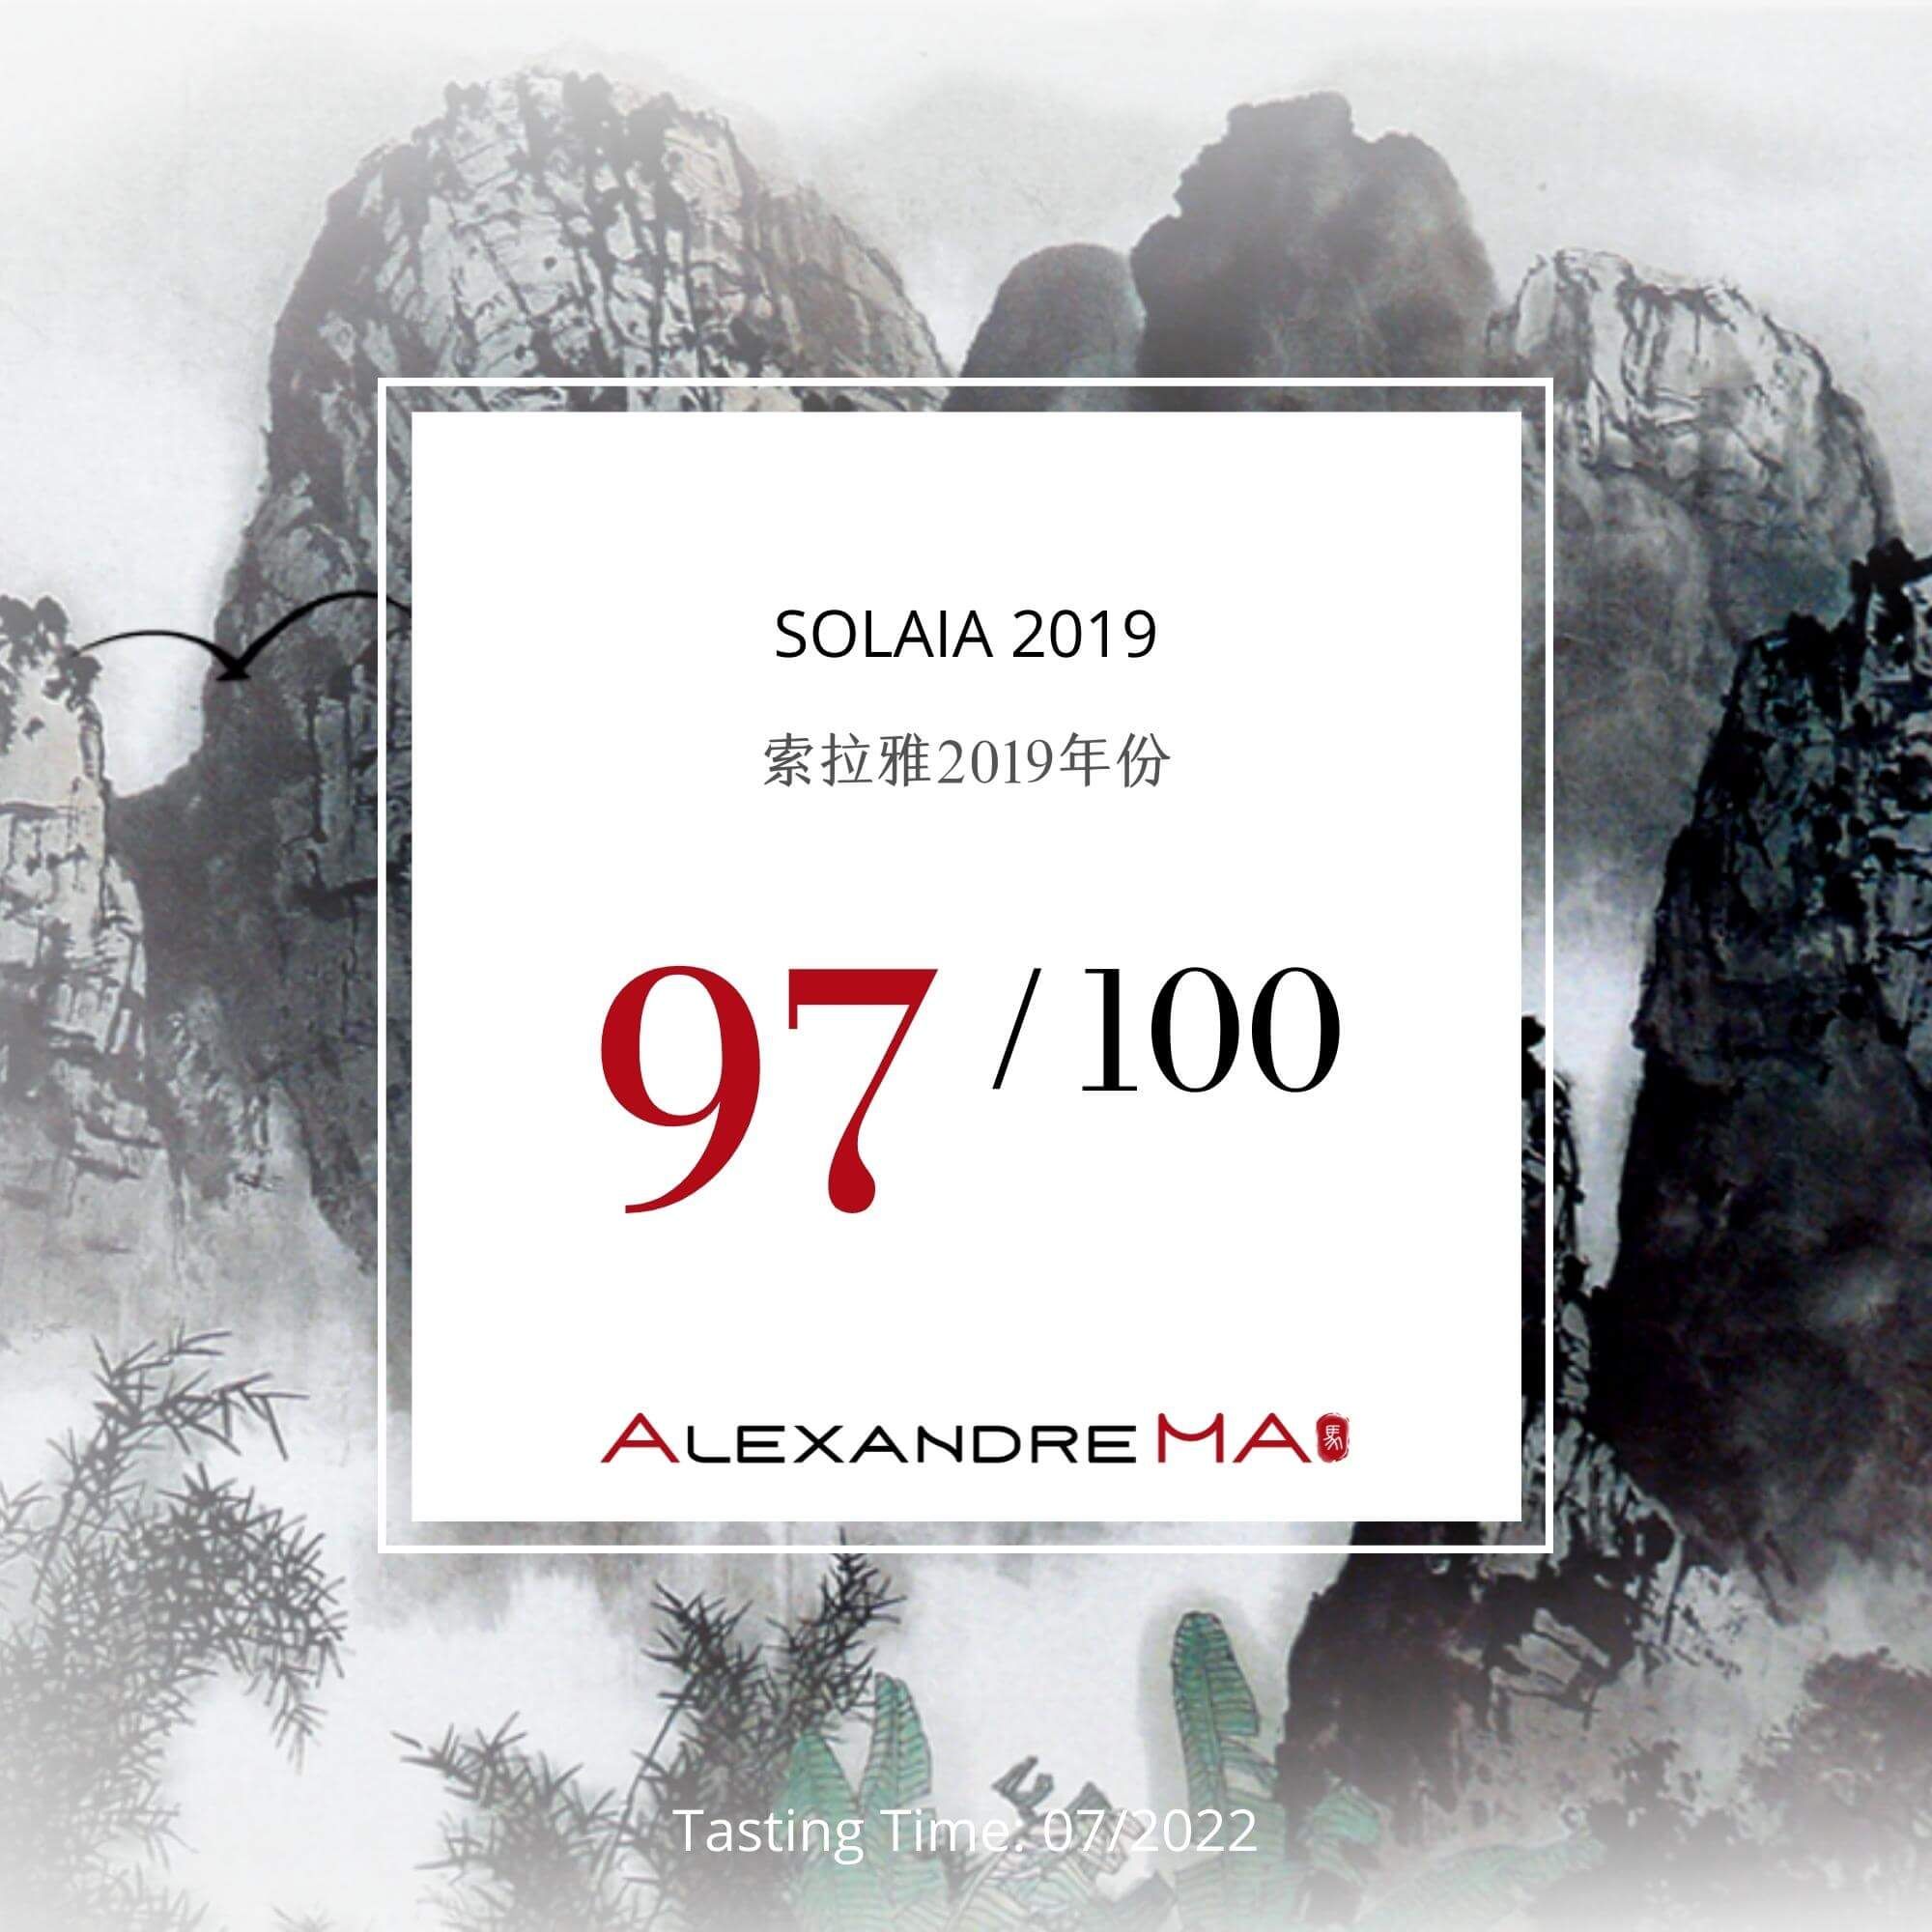 Solaia 2019 - Alexandre MA